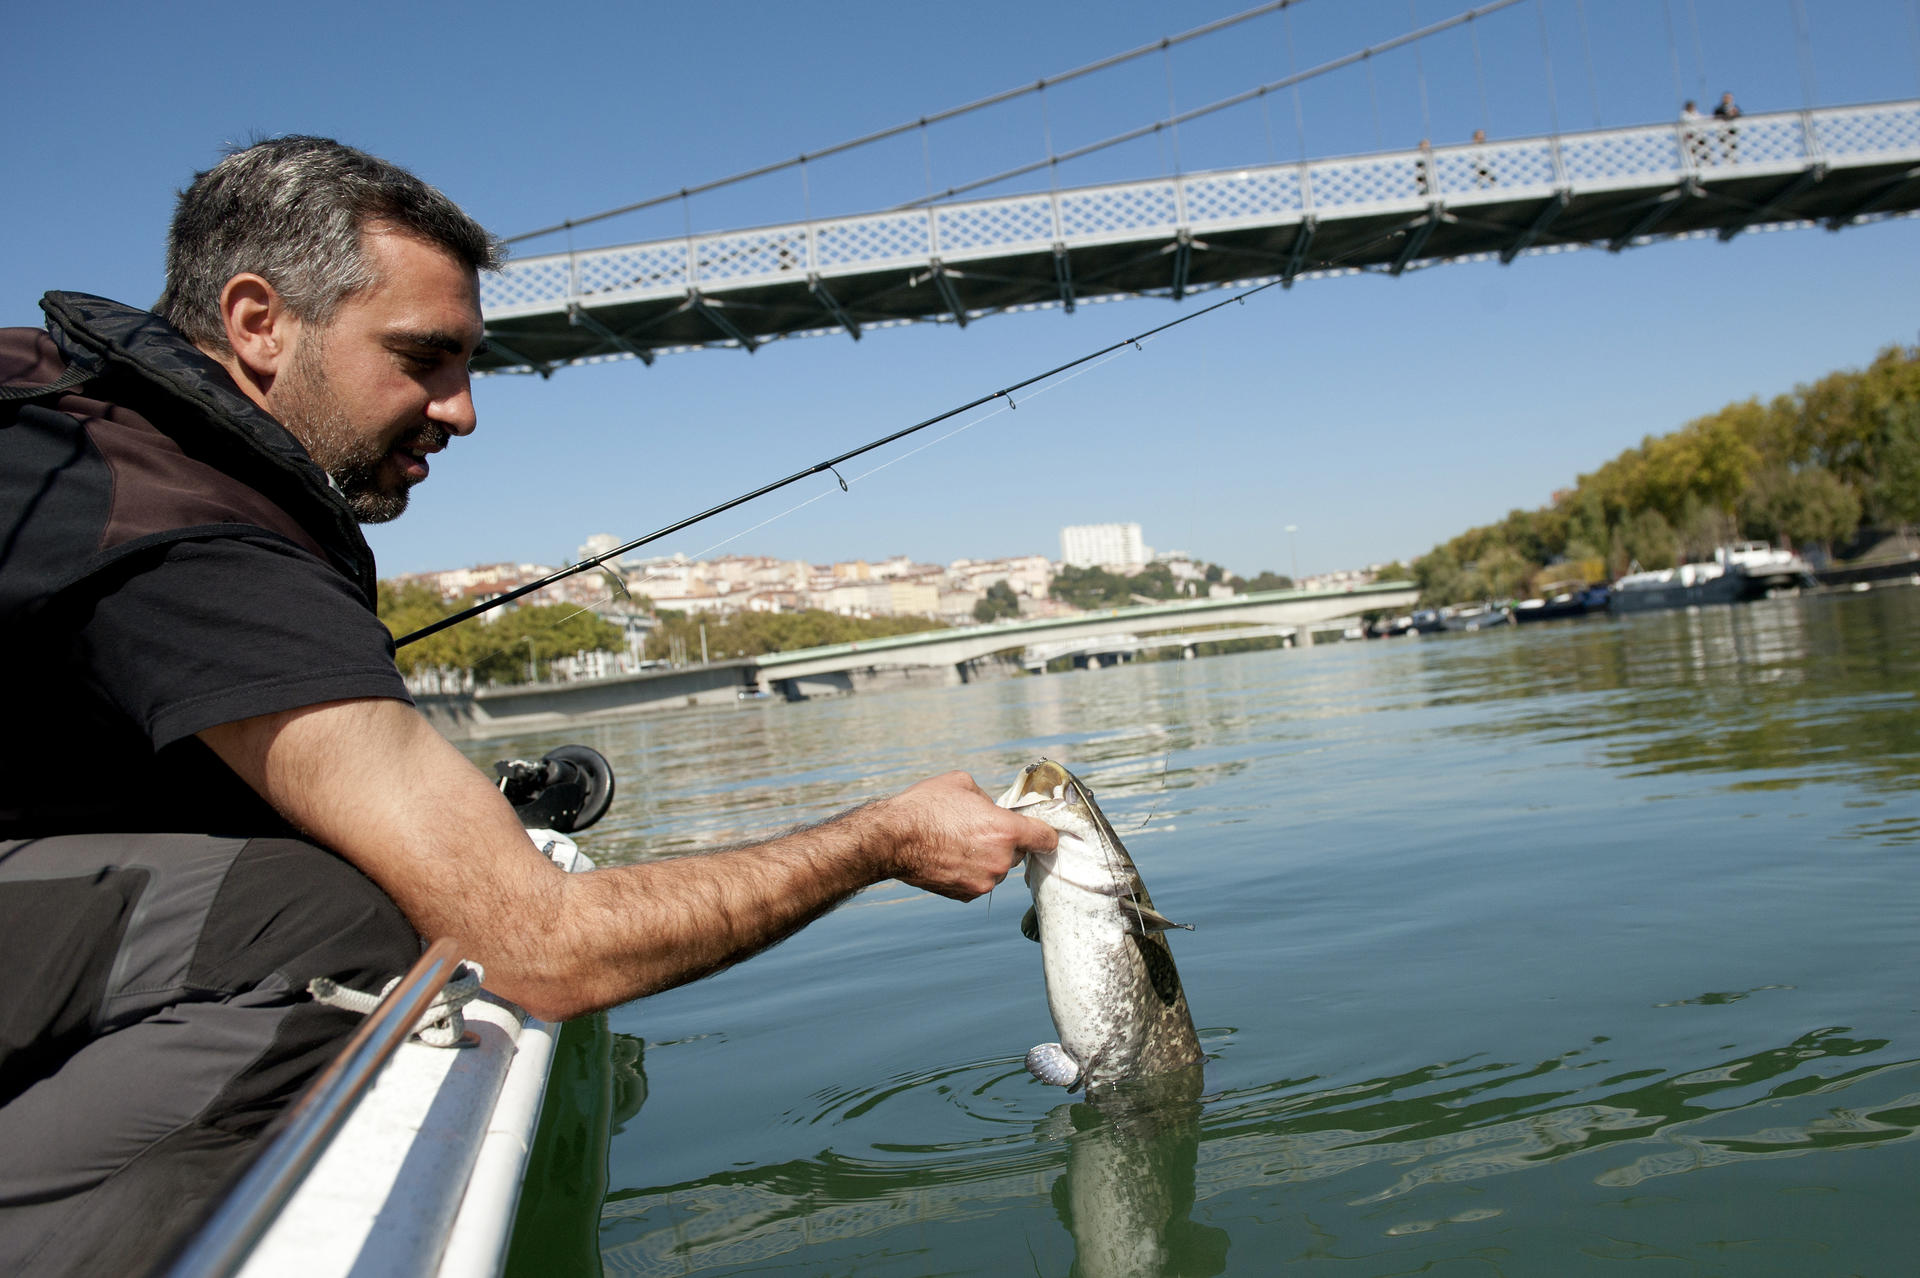 Wels catfish fishing - Fédération de pêche du Rhône